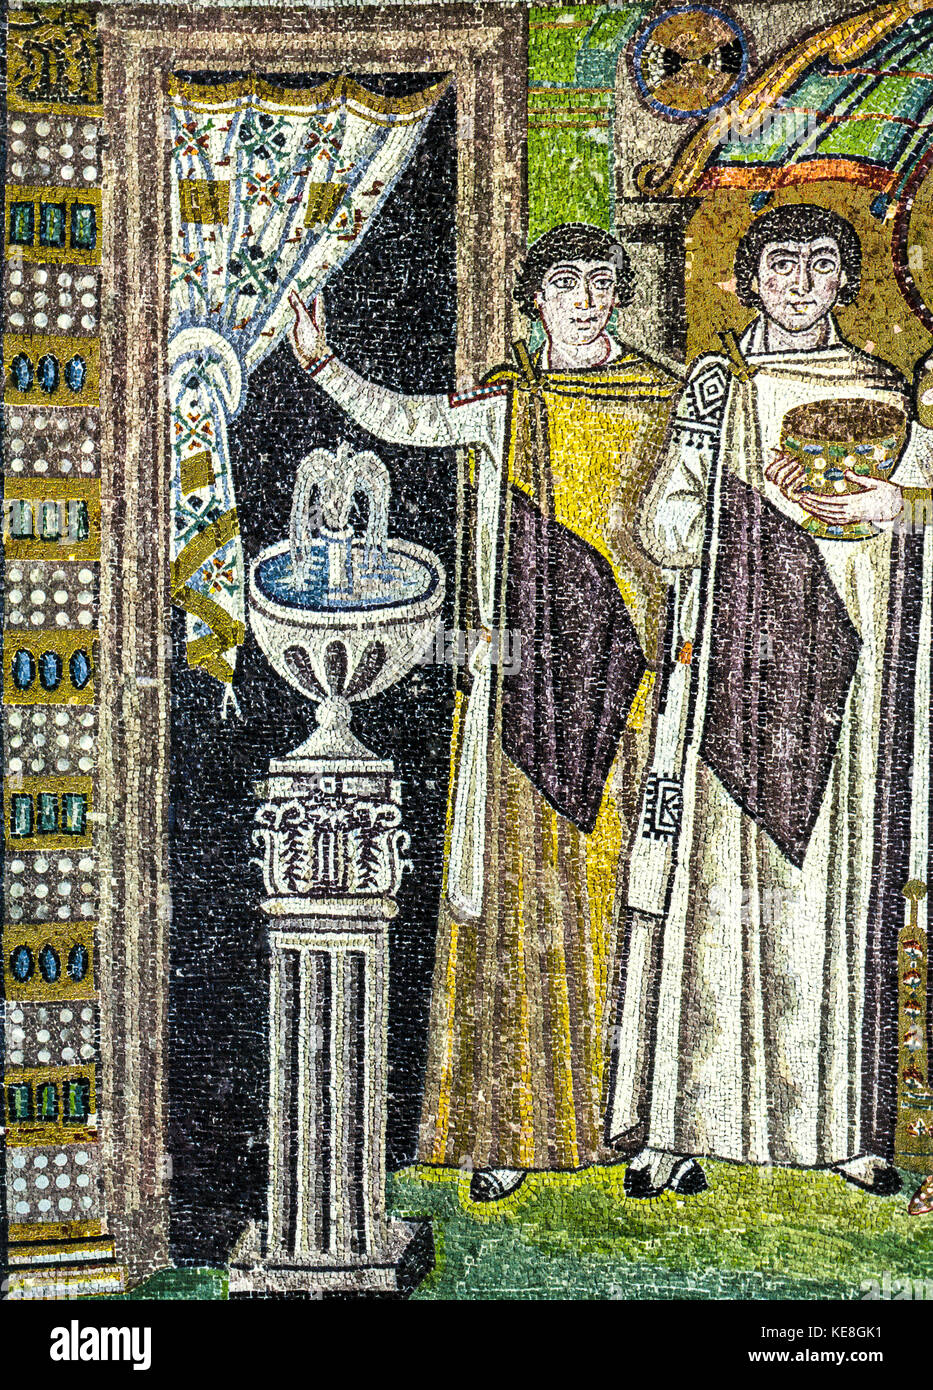 Italia Emilia Romagna ravenna basílica de San Vitale mosaico -los dignatarios de la corte bizantina, fragmento de la emperatriz teodora y su corte Foto de stock